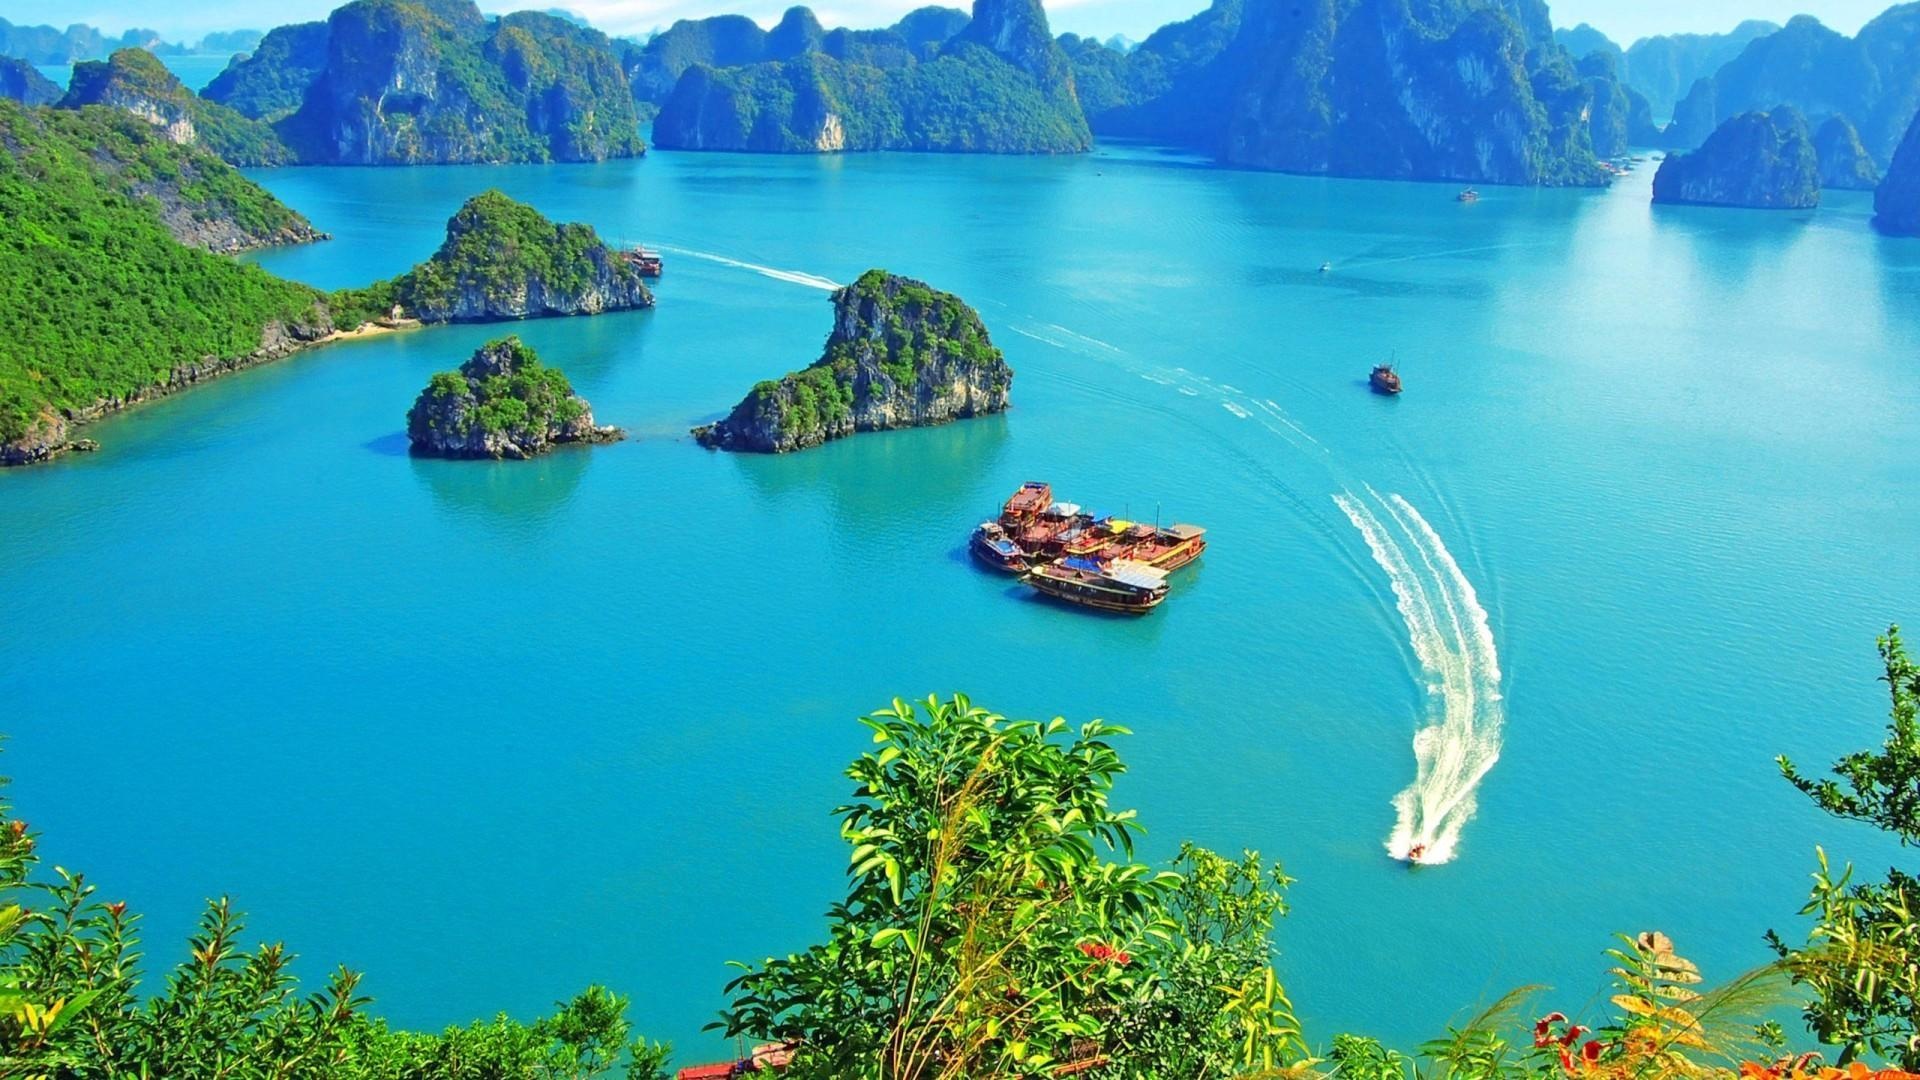 tourhub | LVP Travel Vietnam | 8 DAYS EXPLORER PACKAGE TOUR IN VIETNAM | 8 DAYS EXPLORER